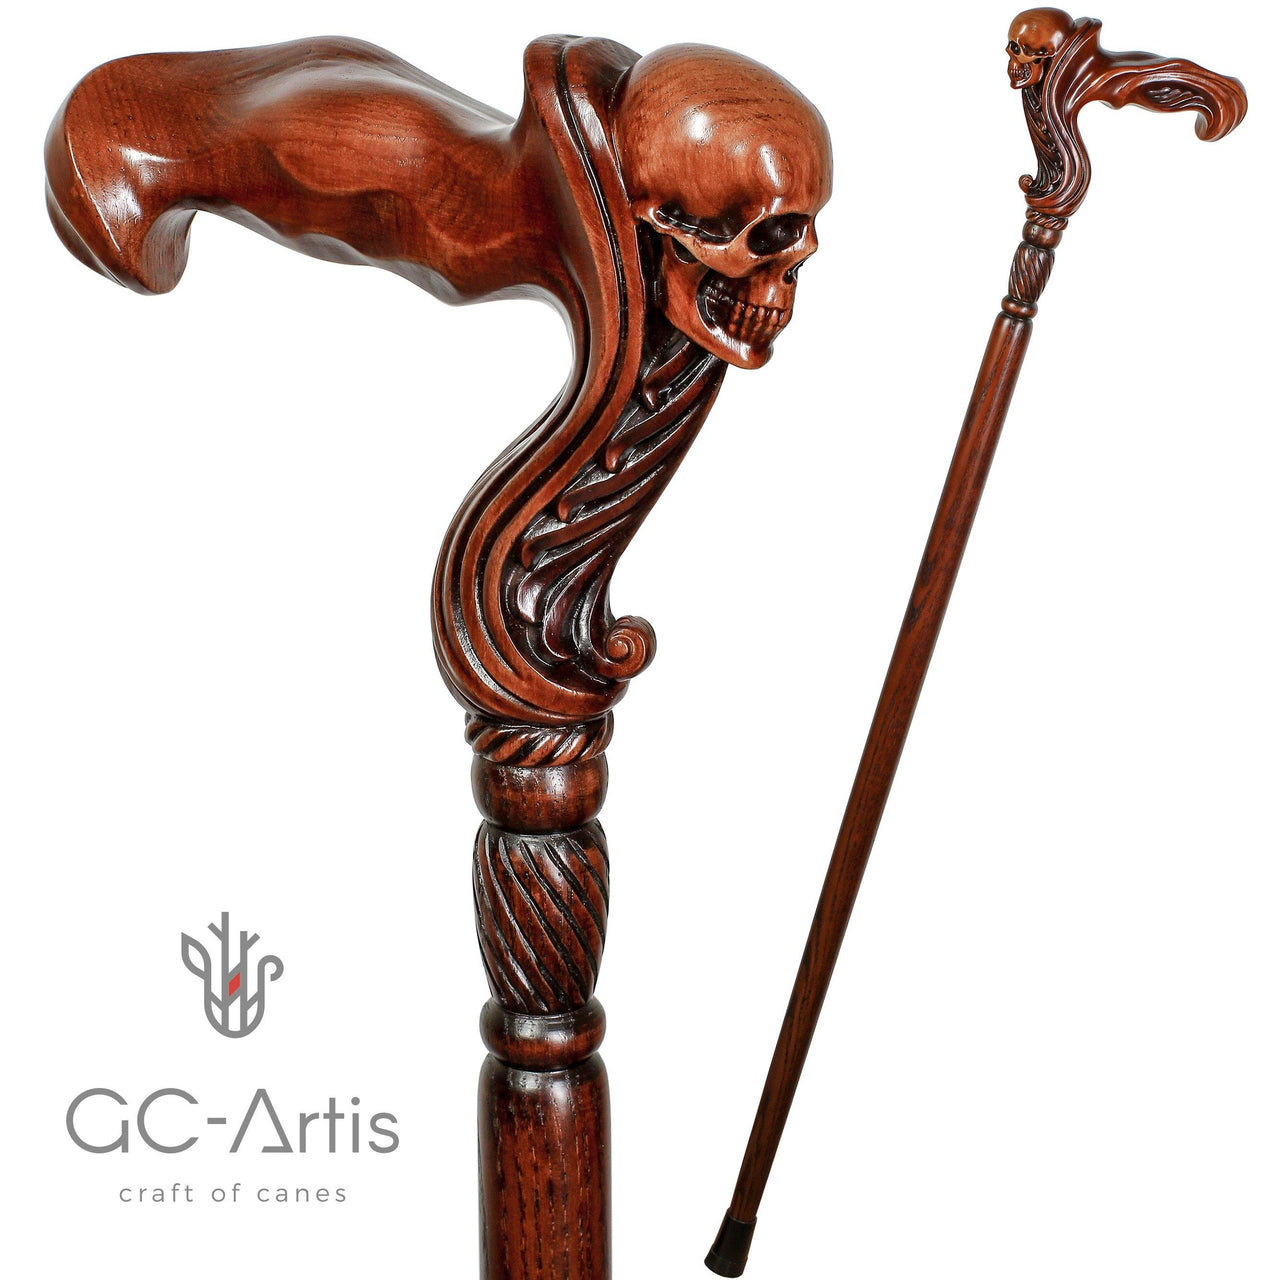 Skull Head Cane Wooden Walking Stick Anatomic Grip - GC-Artis Walking Sticks Canes